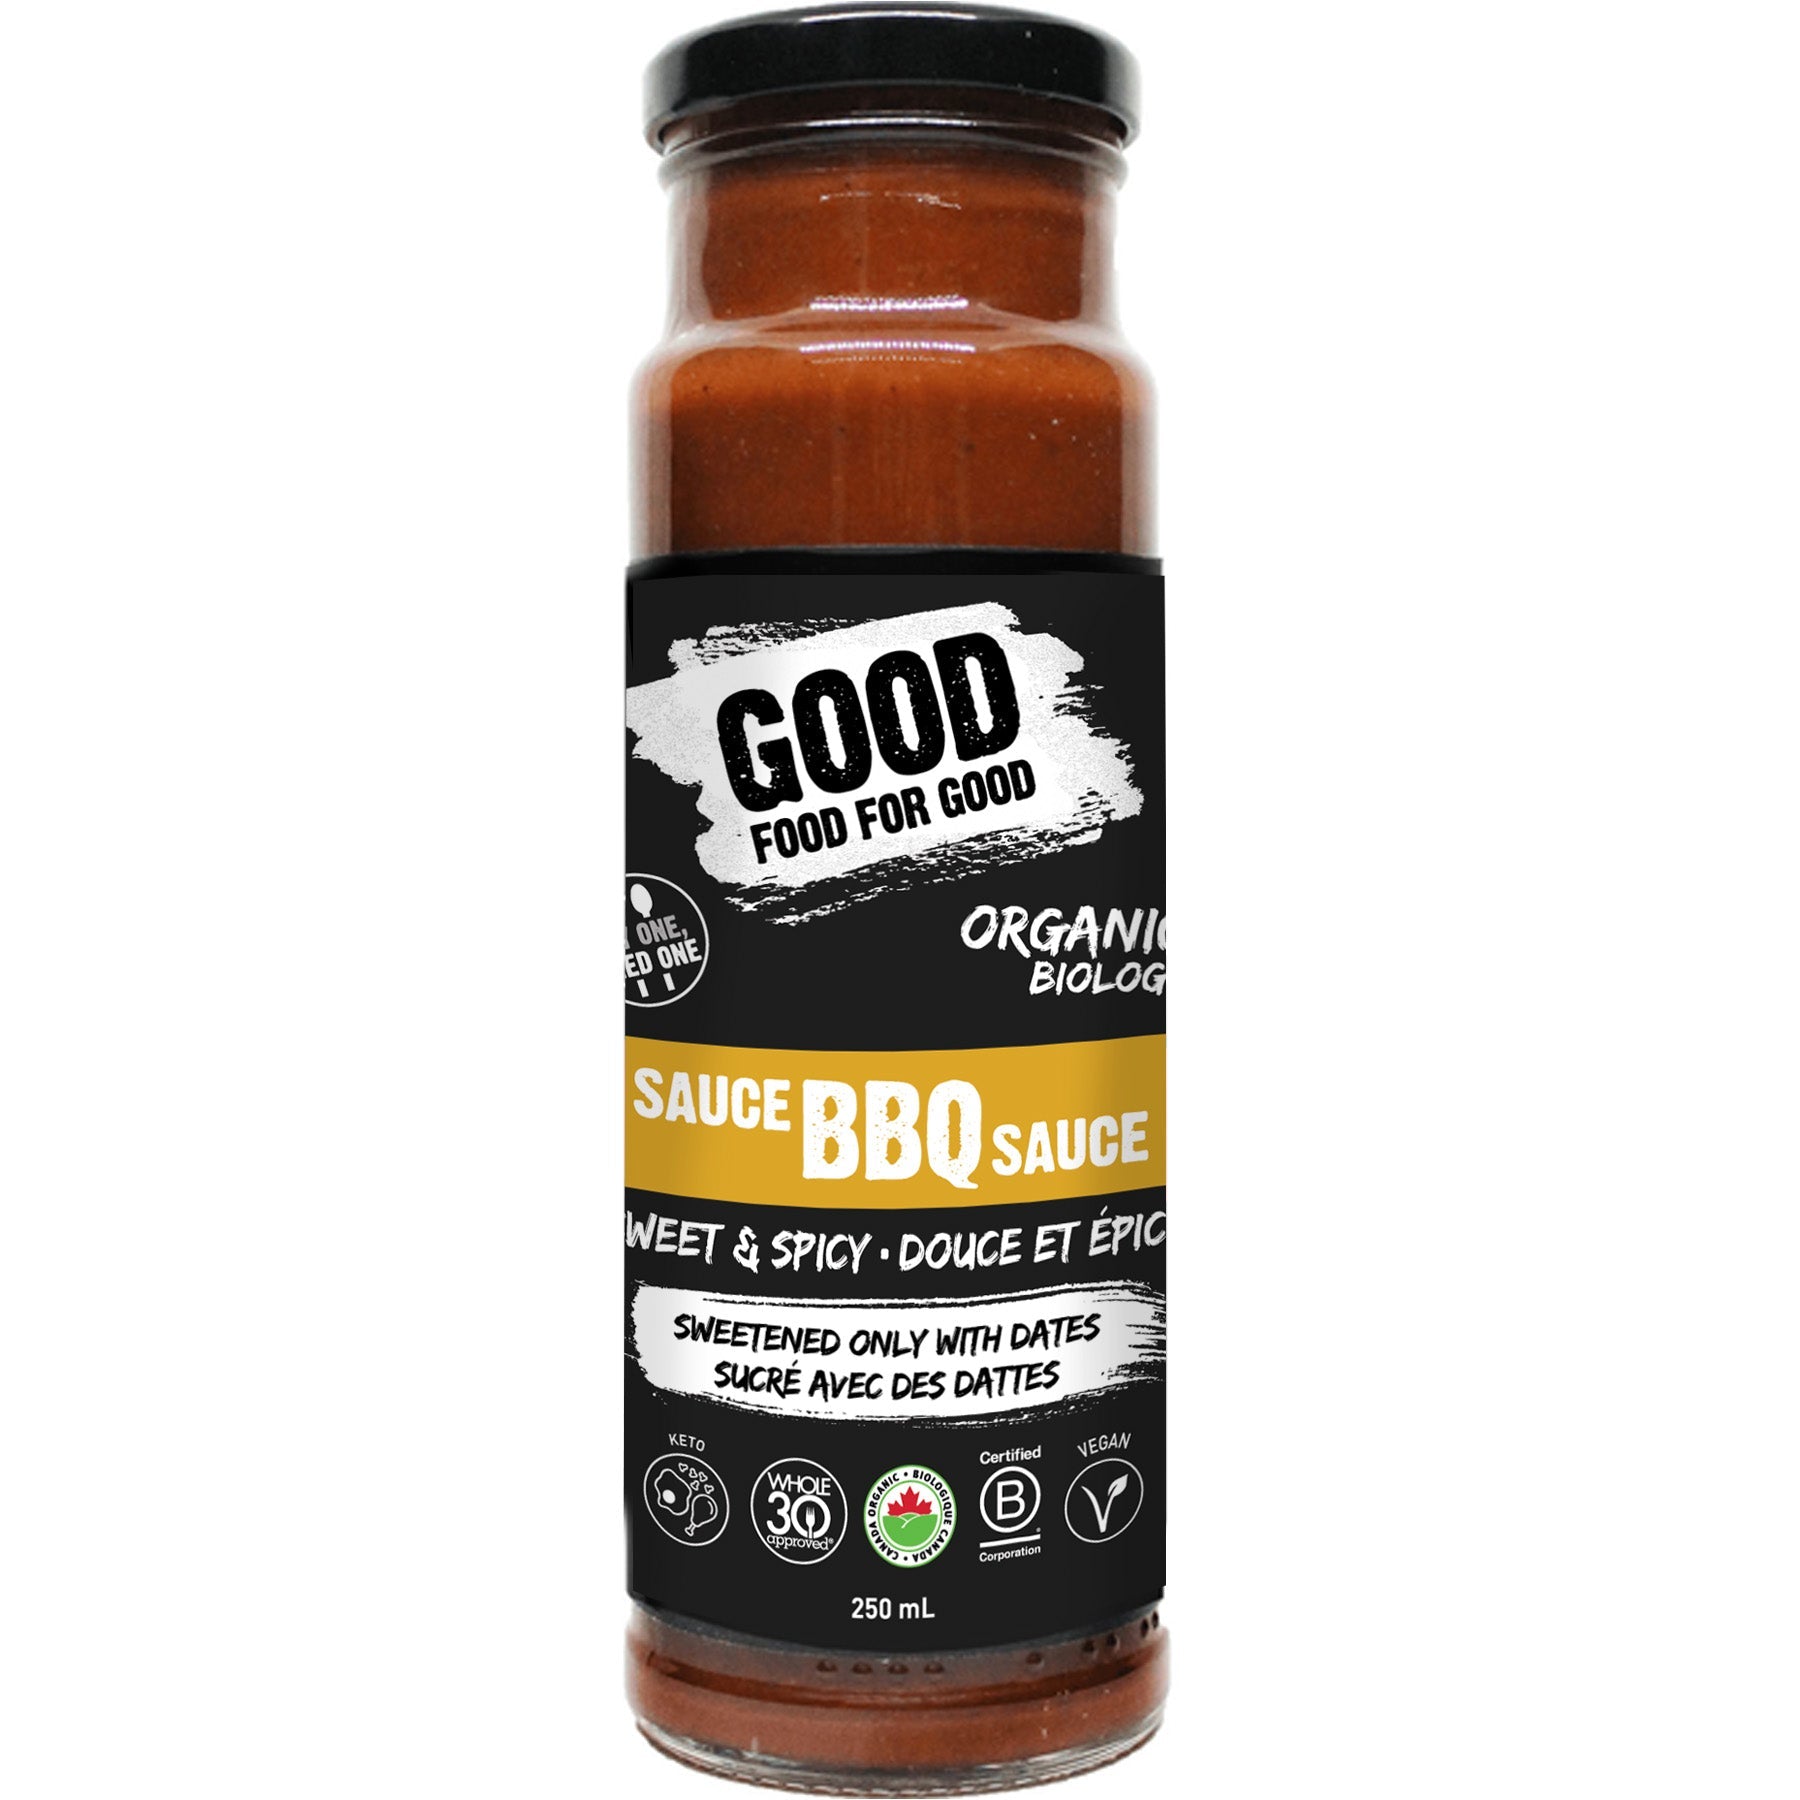 Good Food for Good BBQ Sauce 250ml